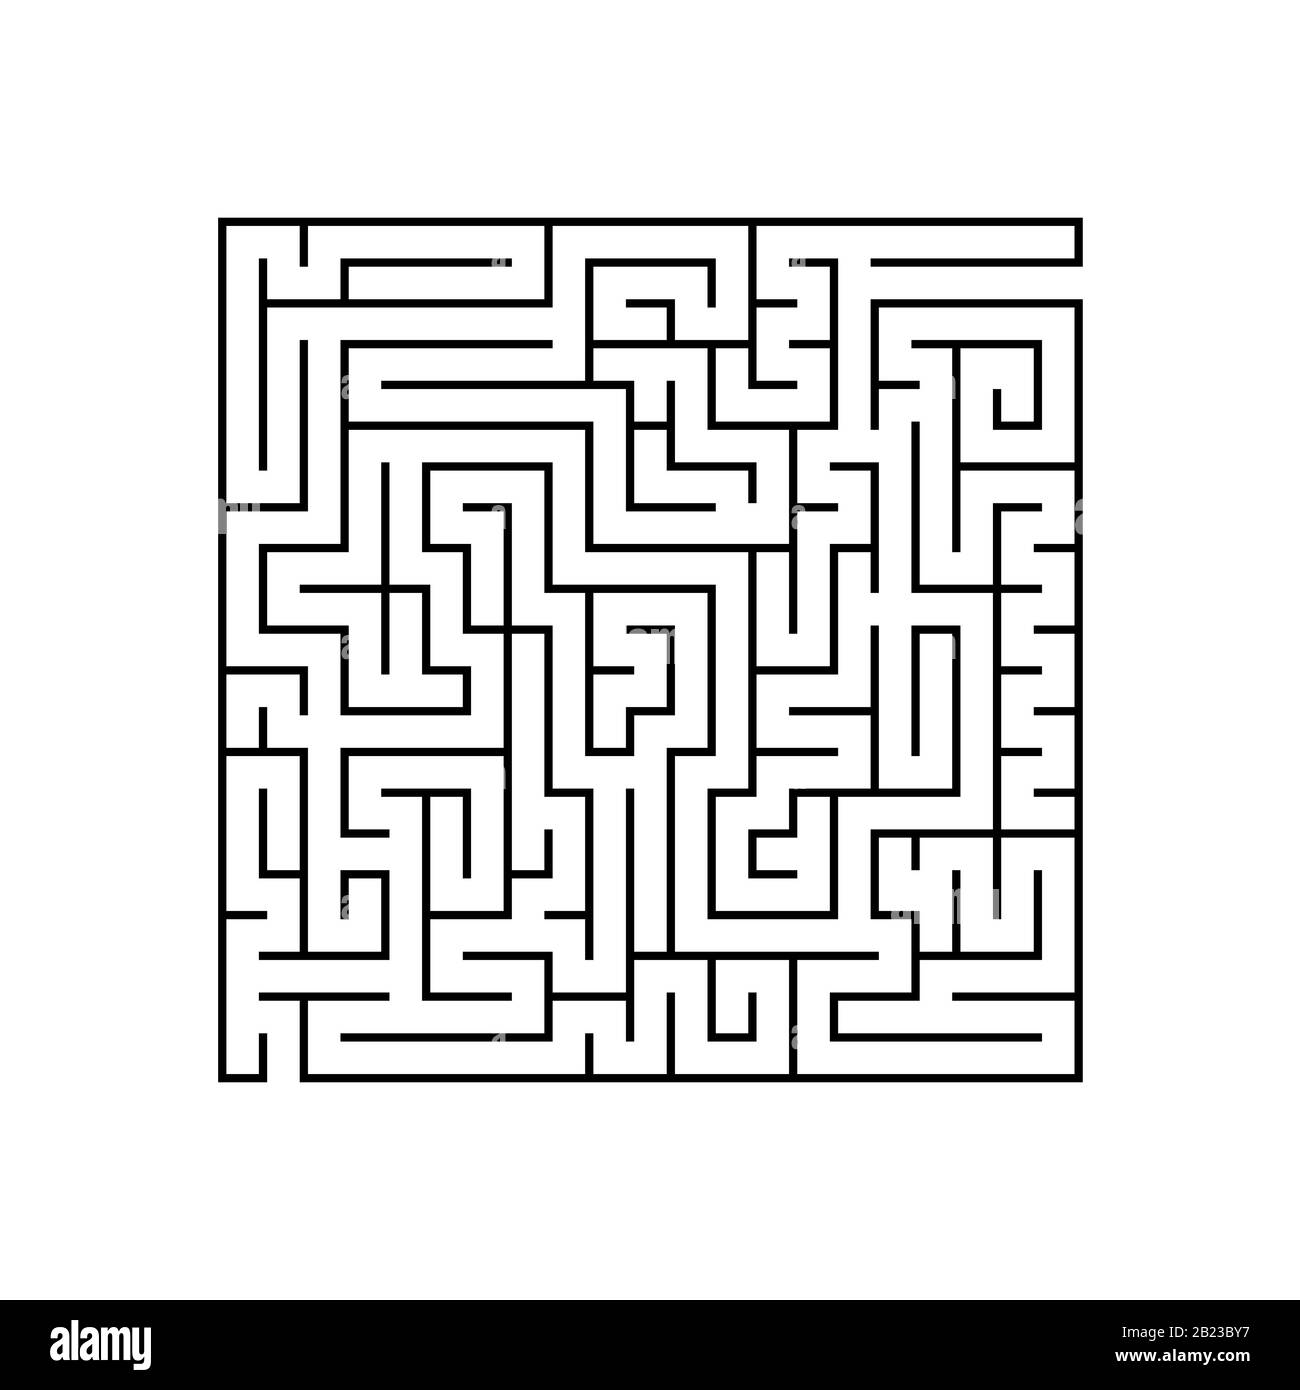 Labirinto quadrato nero con ingresso ed uscita. Un gioco per bambini e adulti. Semplice immagine vettoriale piatta isolata su sfondo bianco Illustrazione Vettoriale